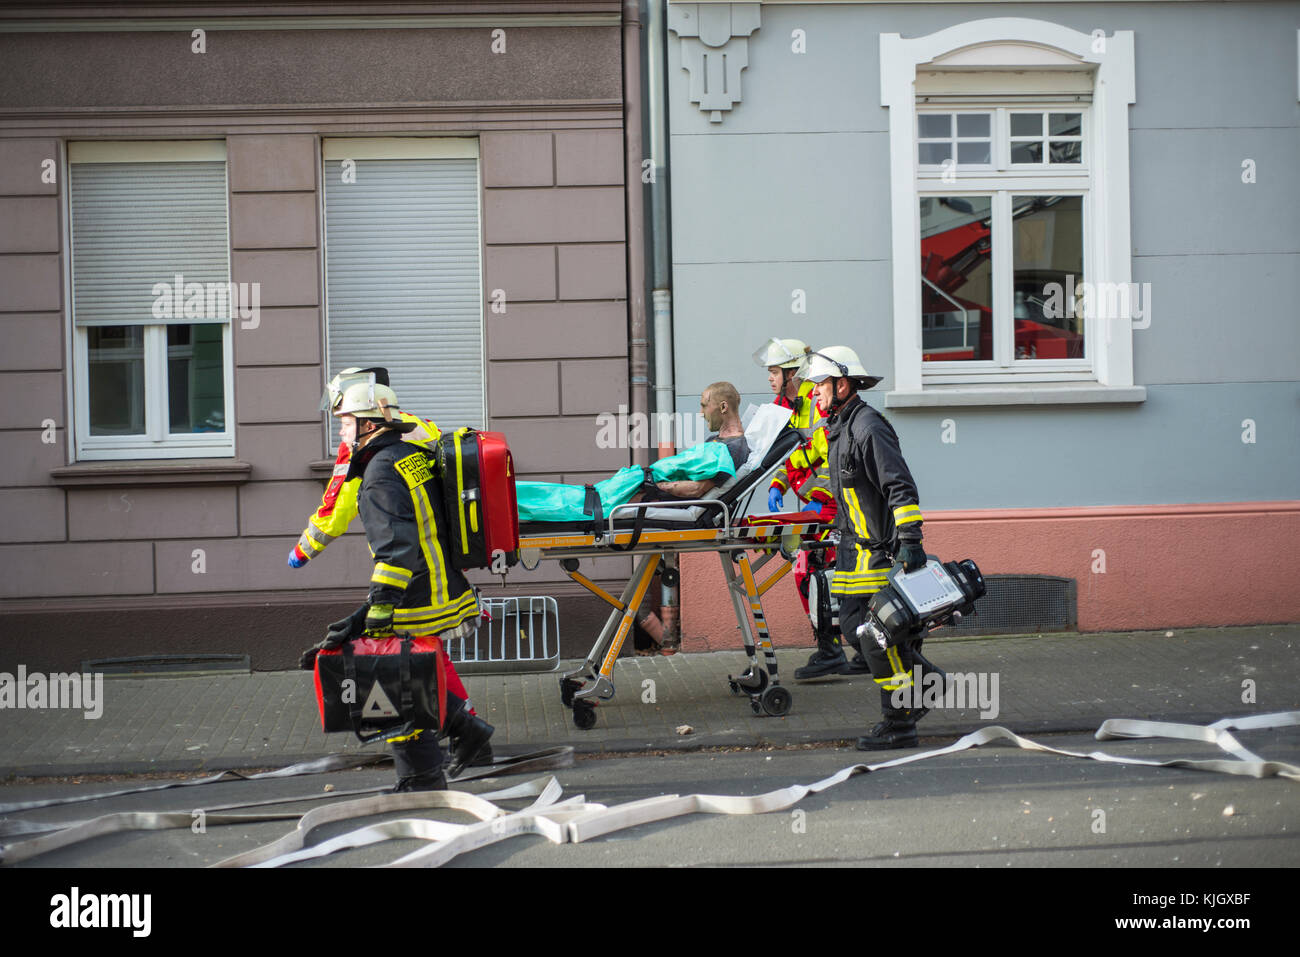 Dortmund, Germania - 31 marzo 2017: fire fighters il salvataggio di un uomo, il presunto assassino, trovata dopo un tentativo di suicidio mediante esplosione in una vecchia casa costruita nel 1920, con persone che vivono all'interno Foto Stock